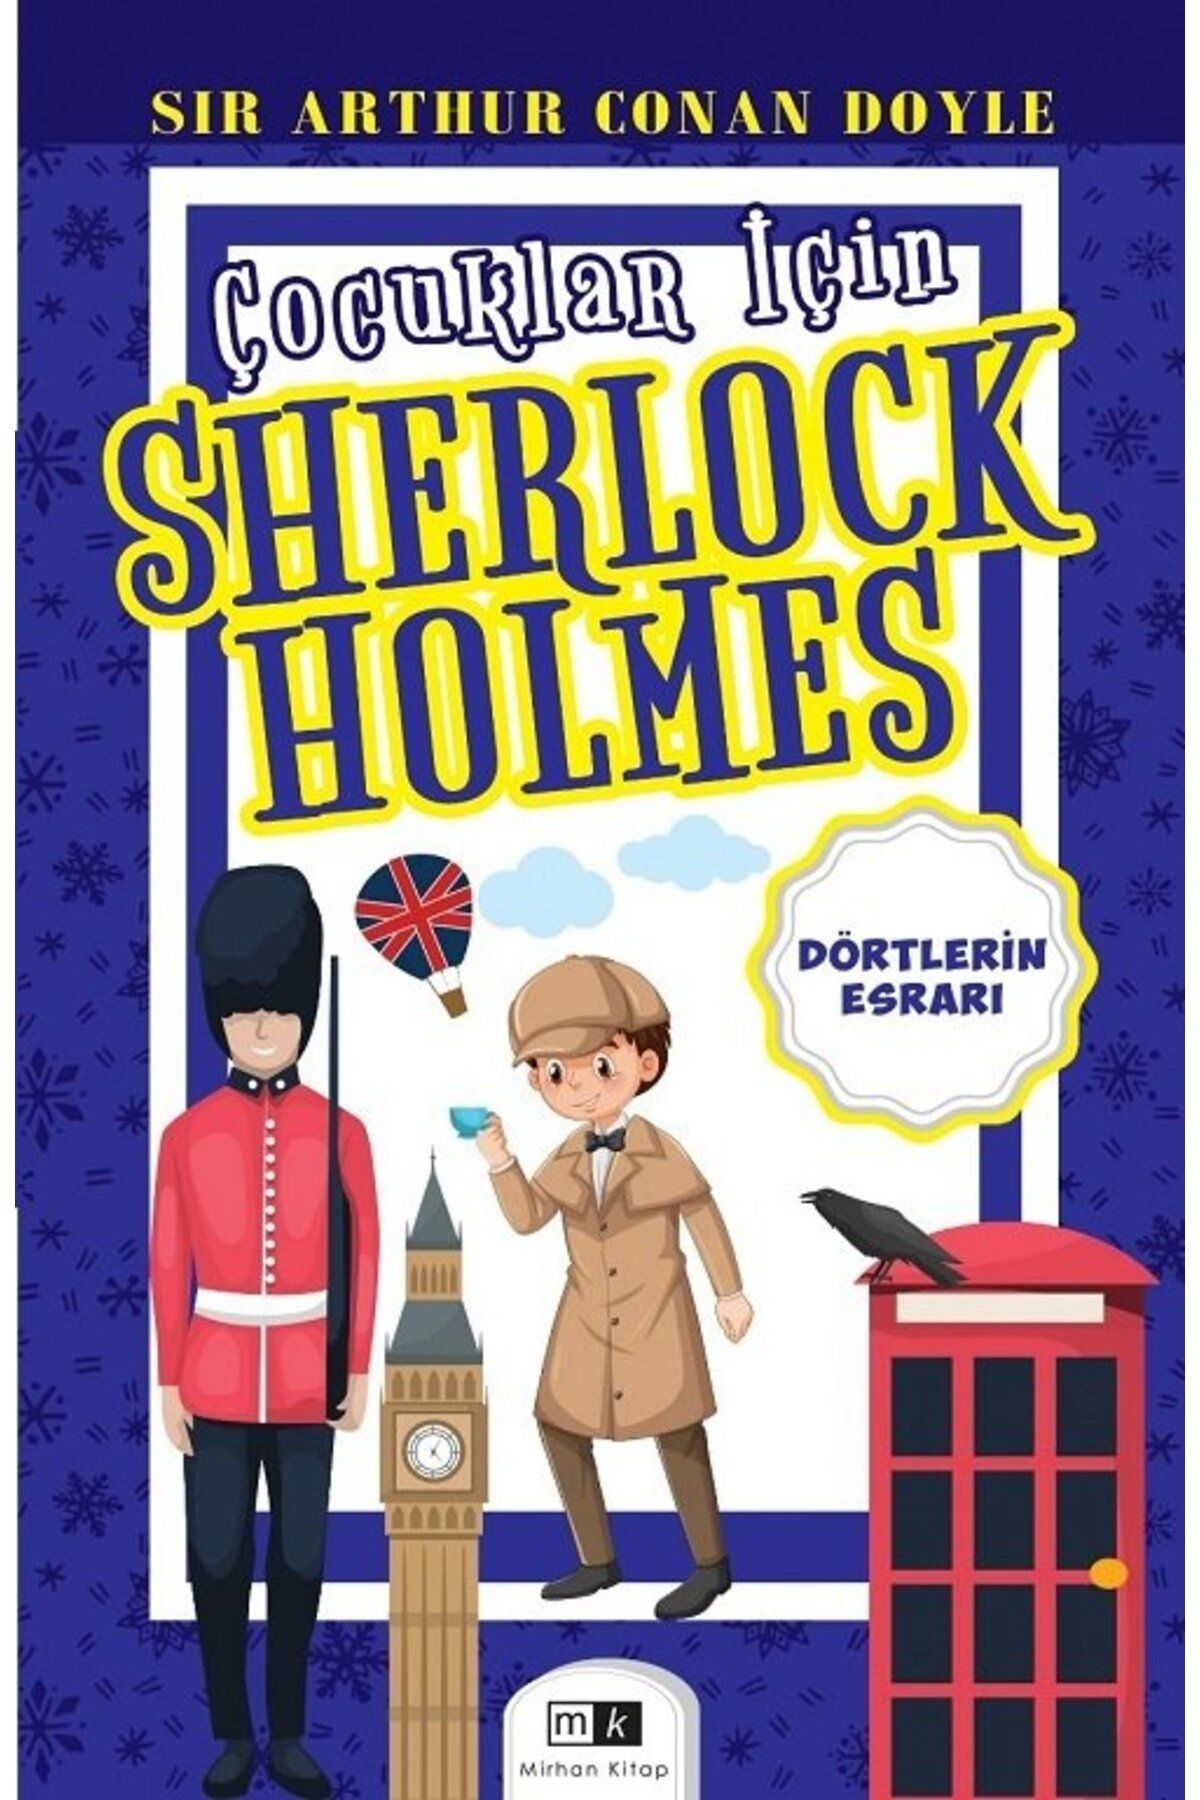 Mirhan Kitap Çocuklar İçin Sherlock Holmes - Dörtlerin Esrarı - Sır Arthur Conan Doyle Mirhan Kitap